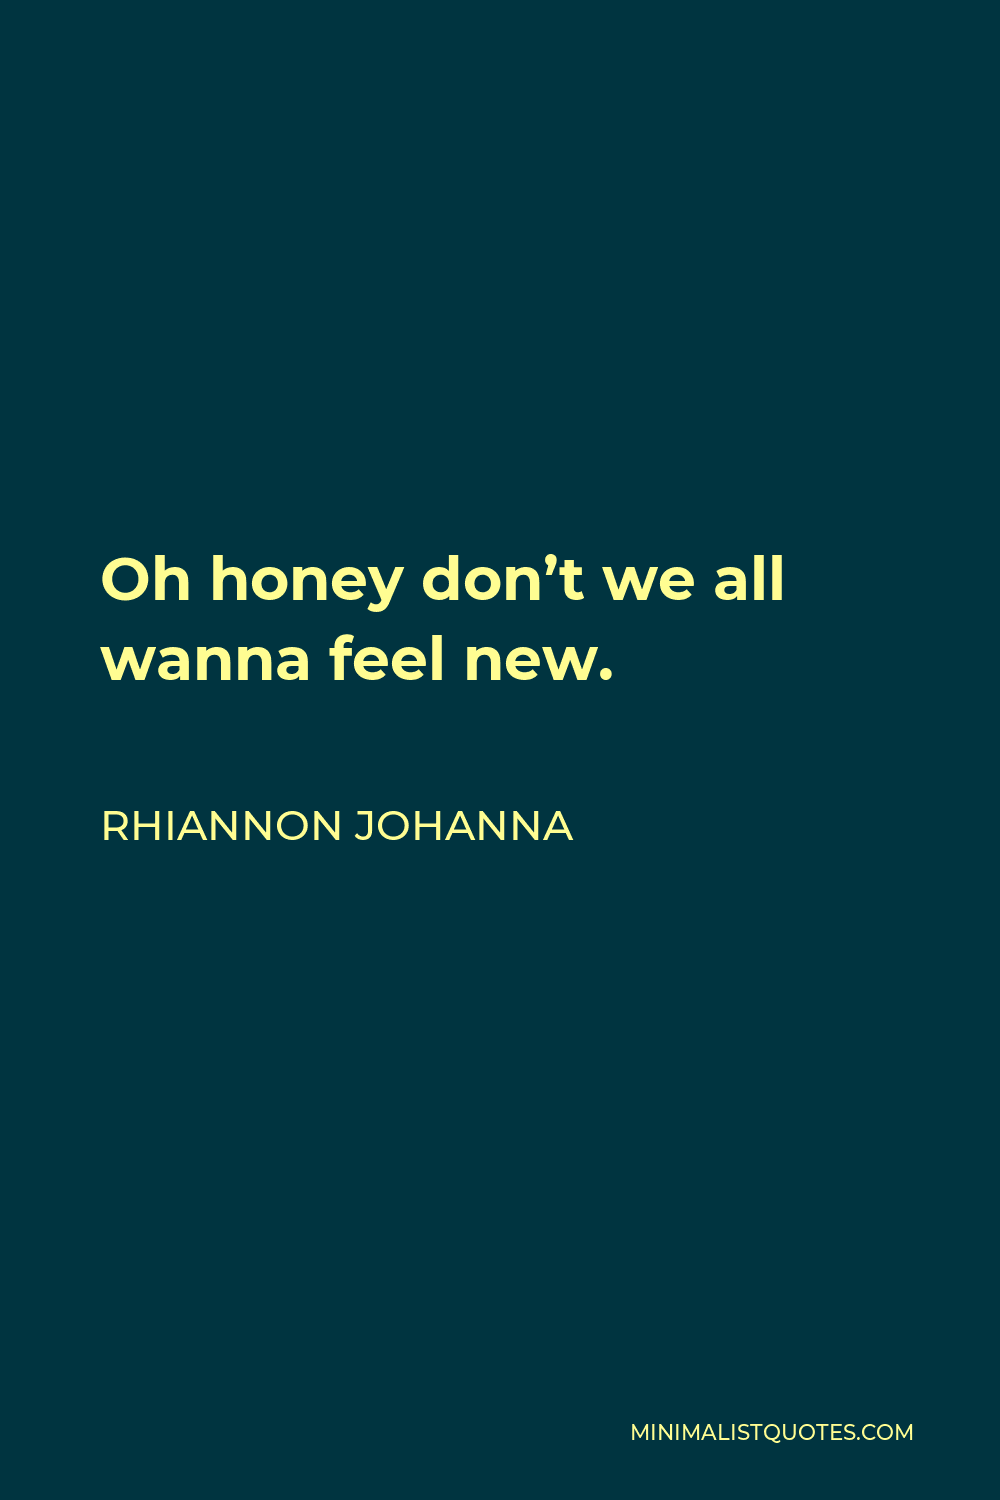 Rhiannon Johanna Quote - Oh honey don’t we all wanna feel new.